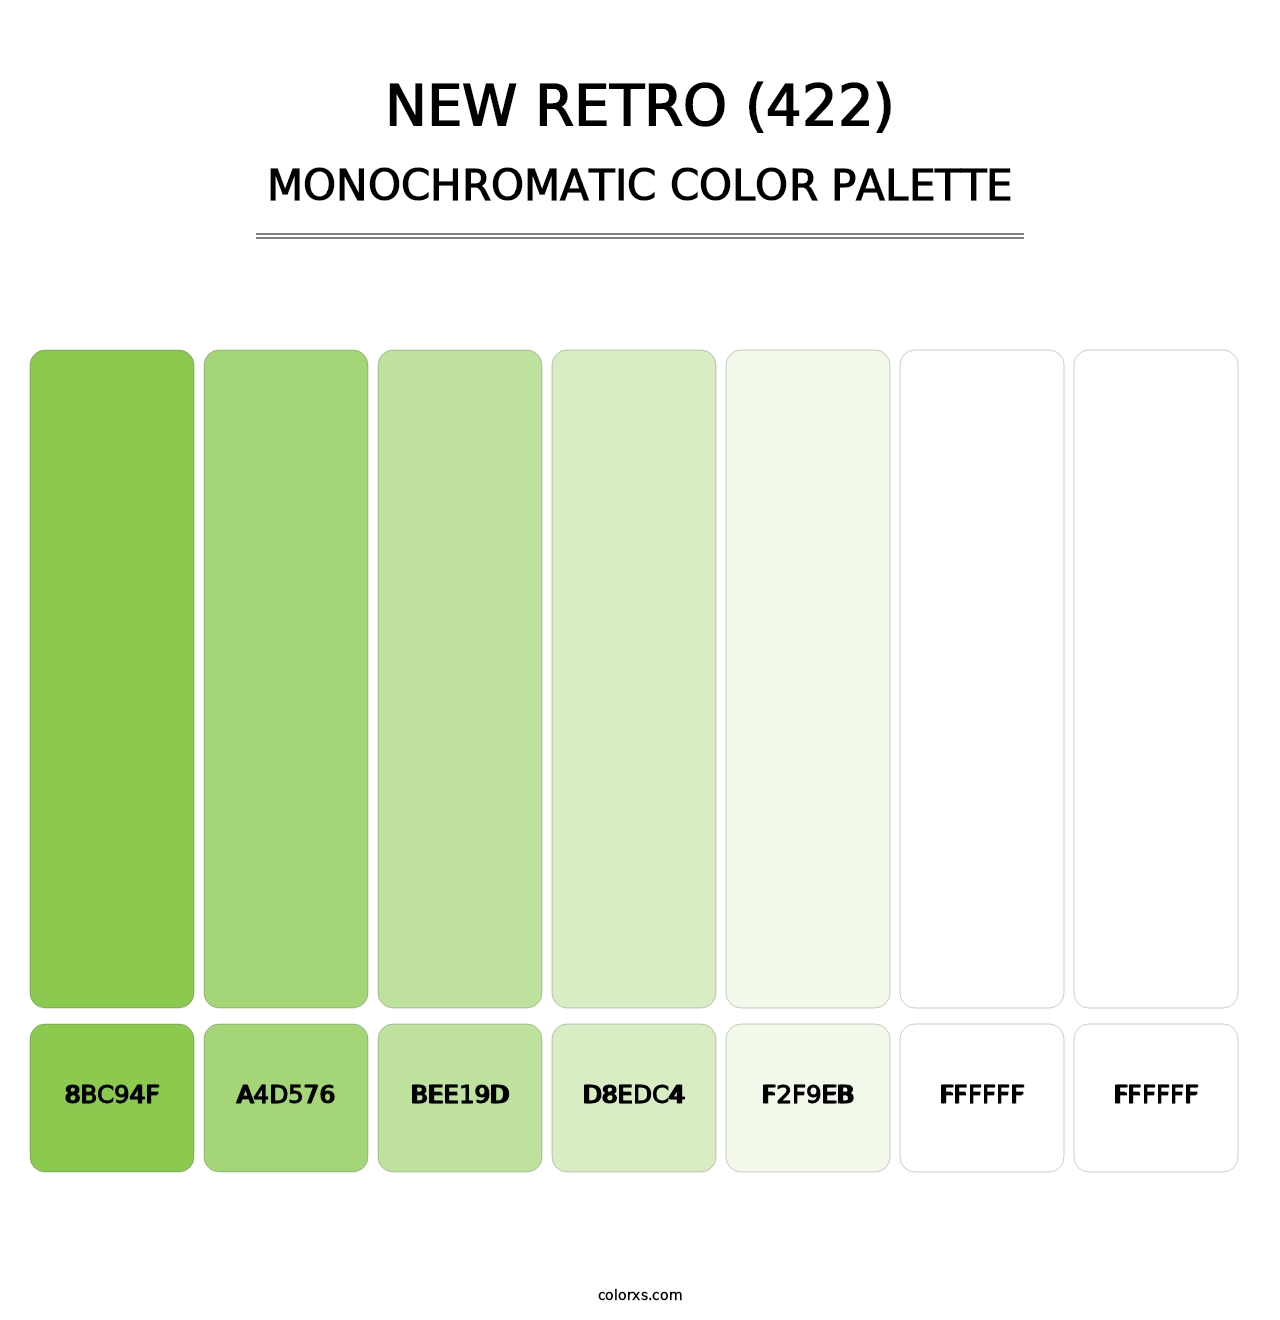 New Retro (422) - Monochromatic Color Palette